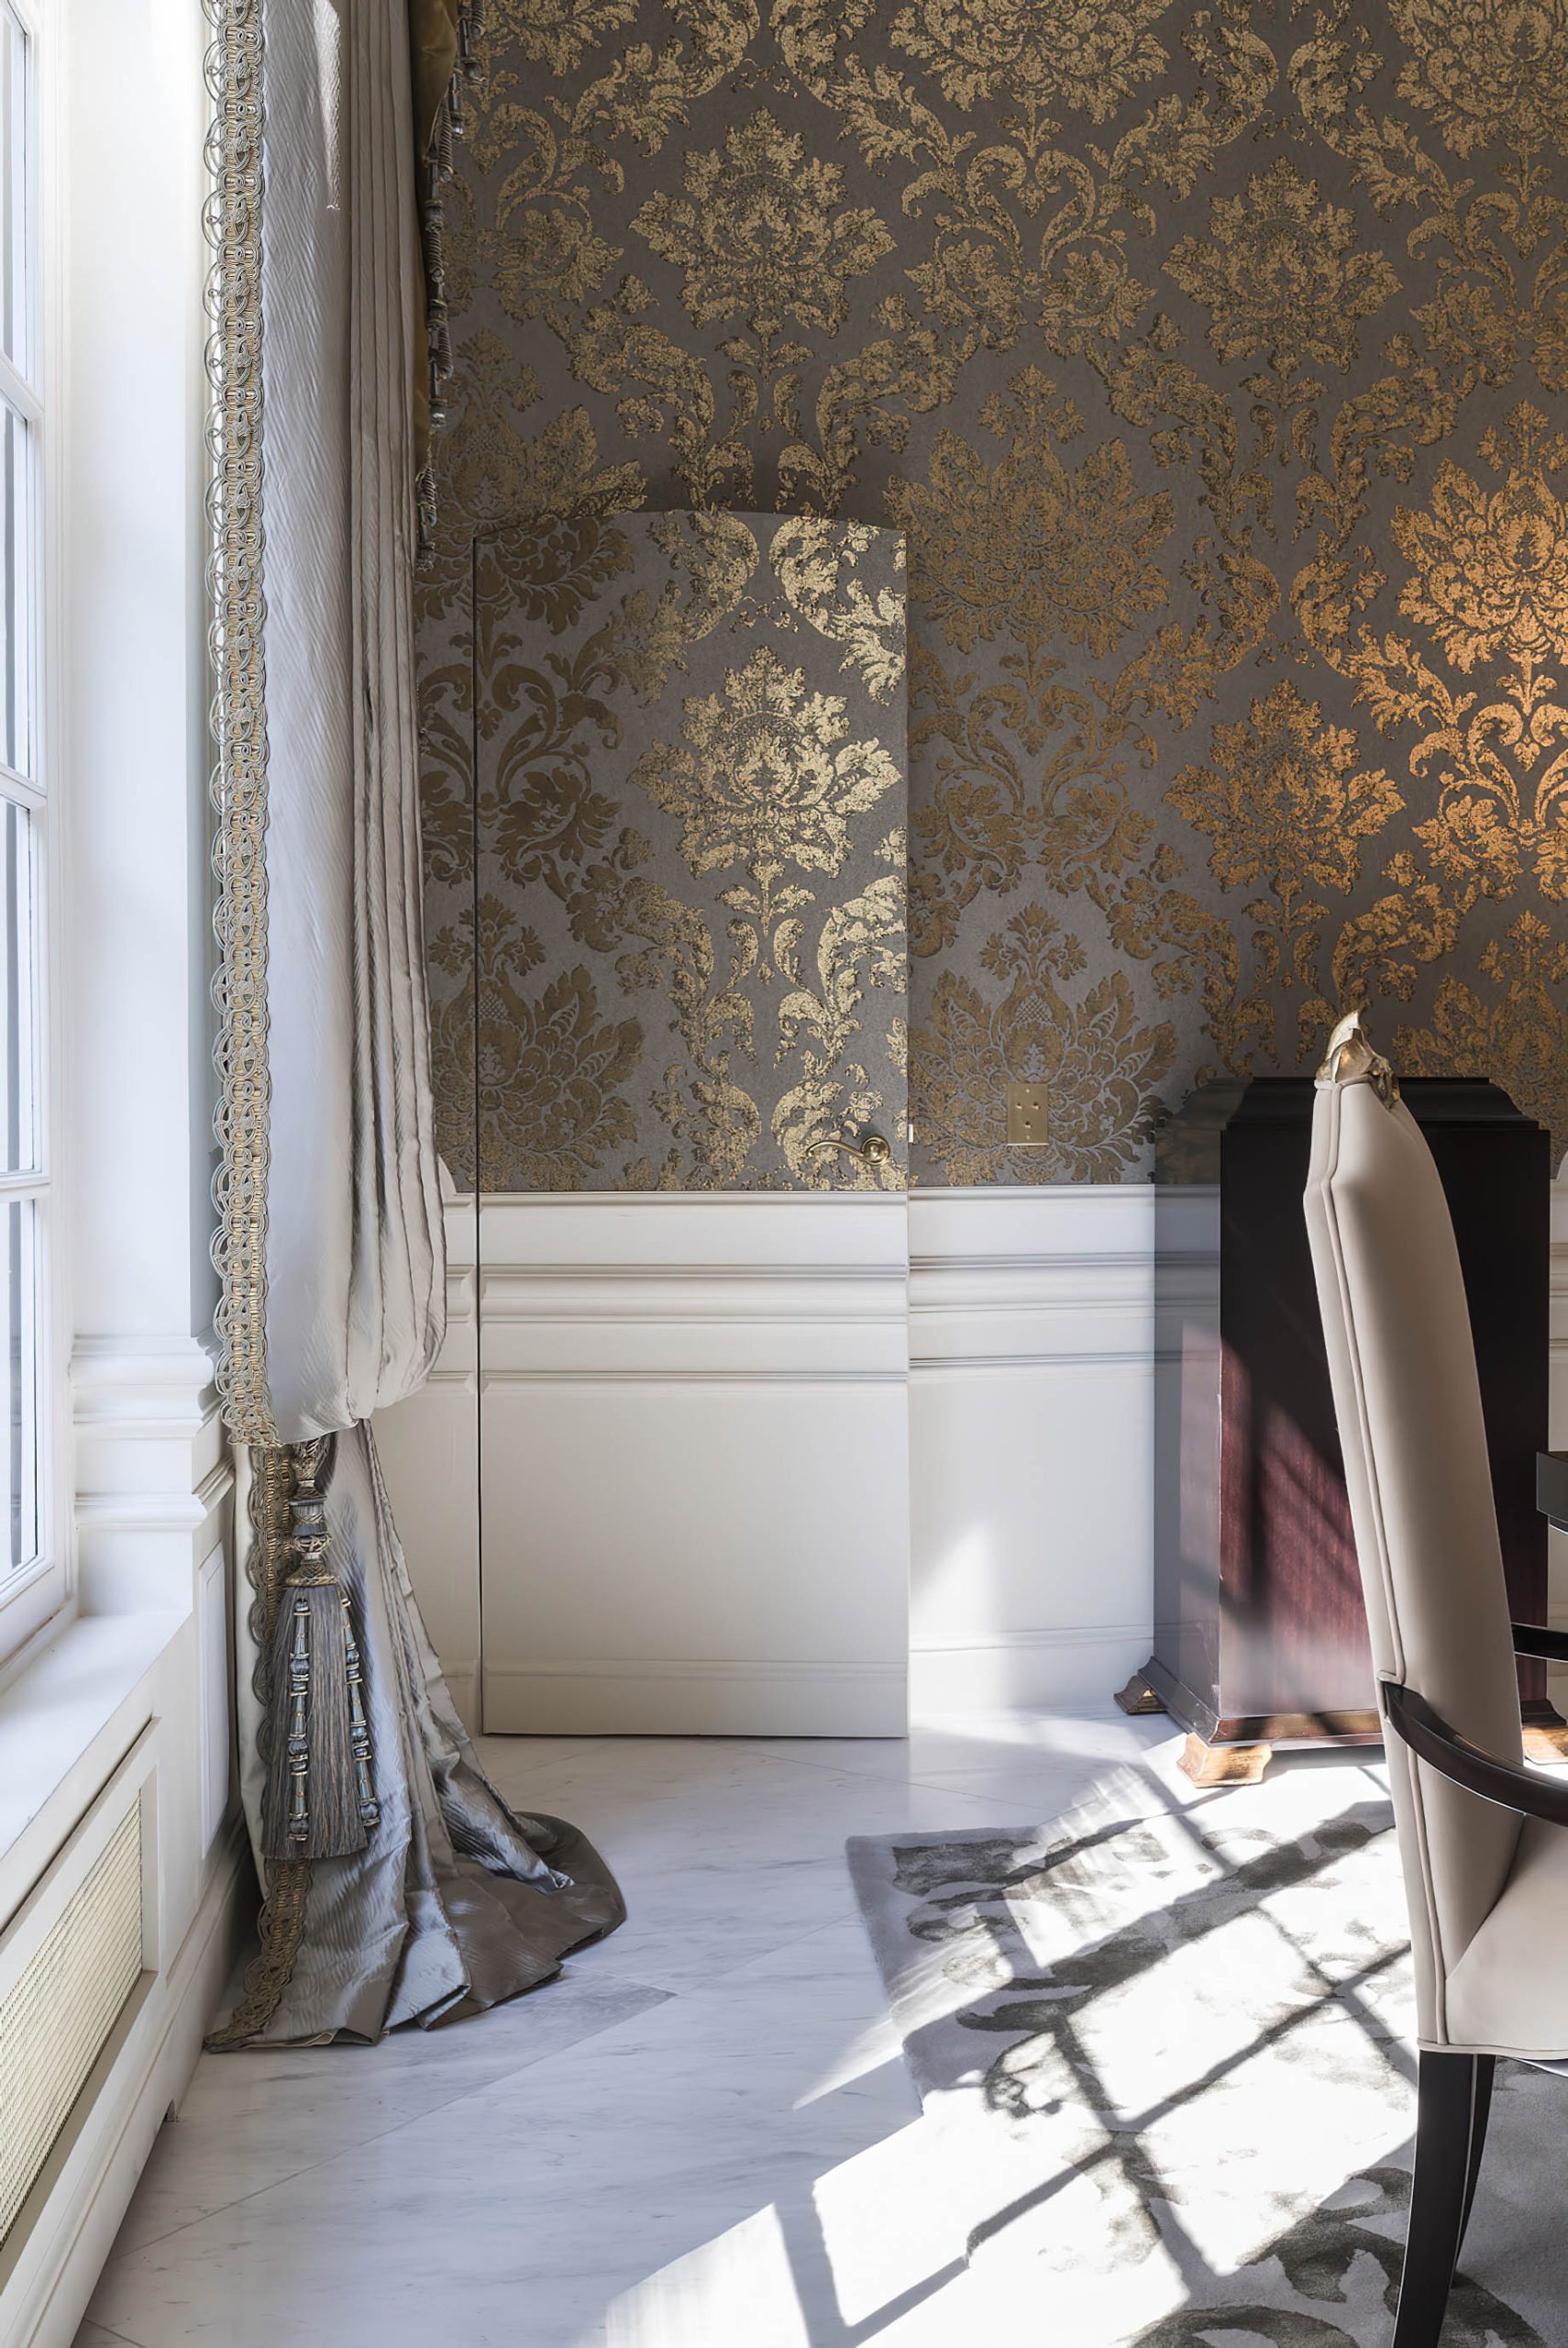 Avenue Foch Apartment Interior Design Paris, France – Kris Turnbull